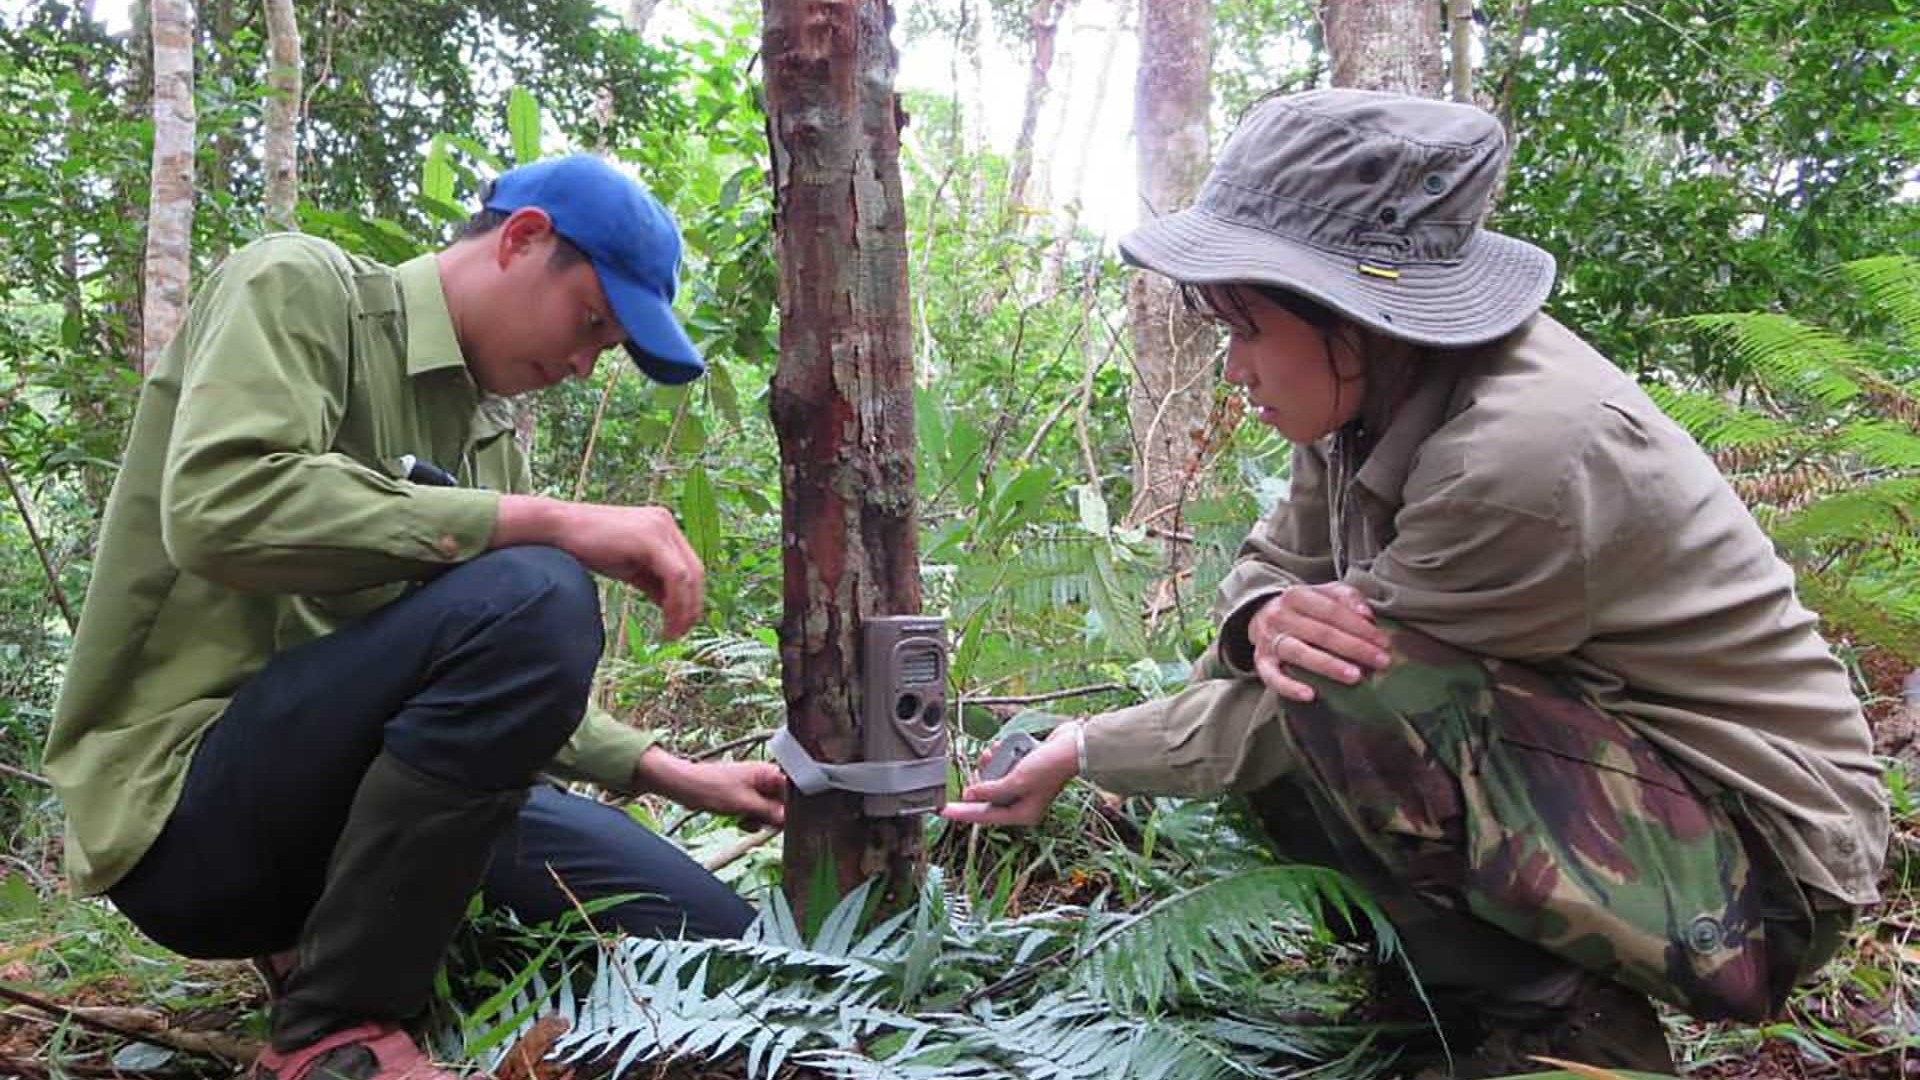 Nhà bảo tồn trẻ Trang Nguyễn: Bảo vệ môi trường và bảo tồn thiên nhiên không phải câu chuyện của riêng ai!